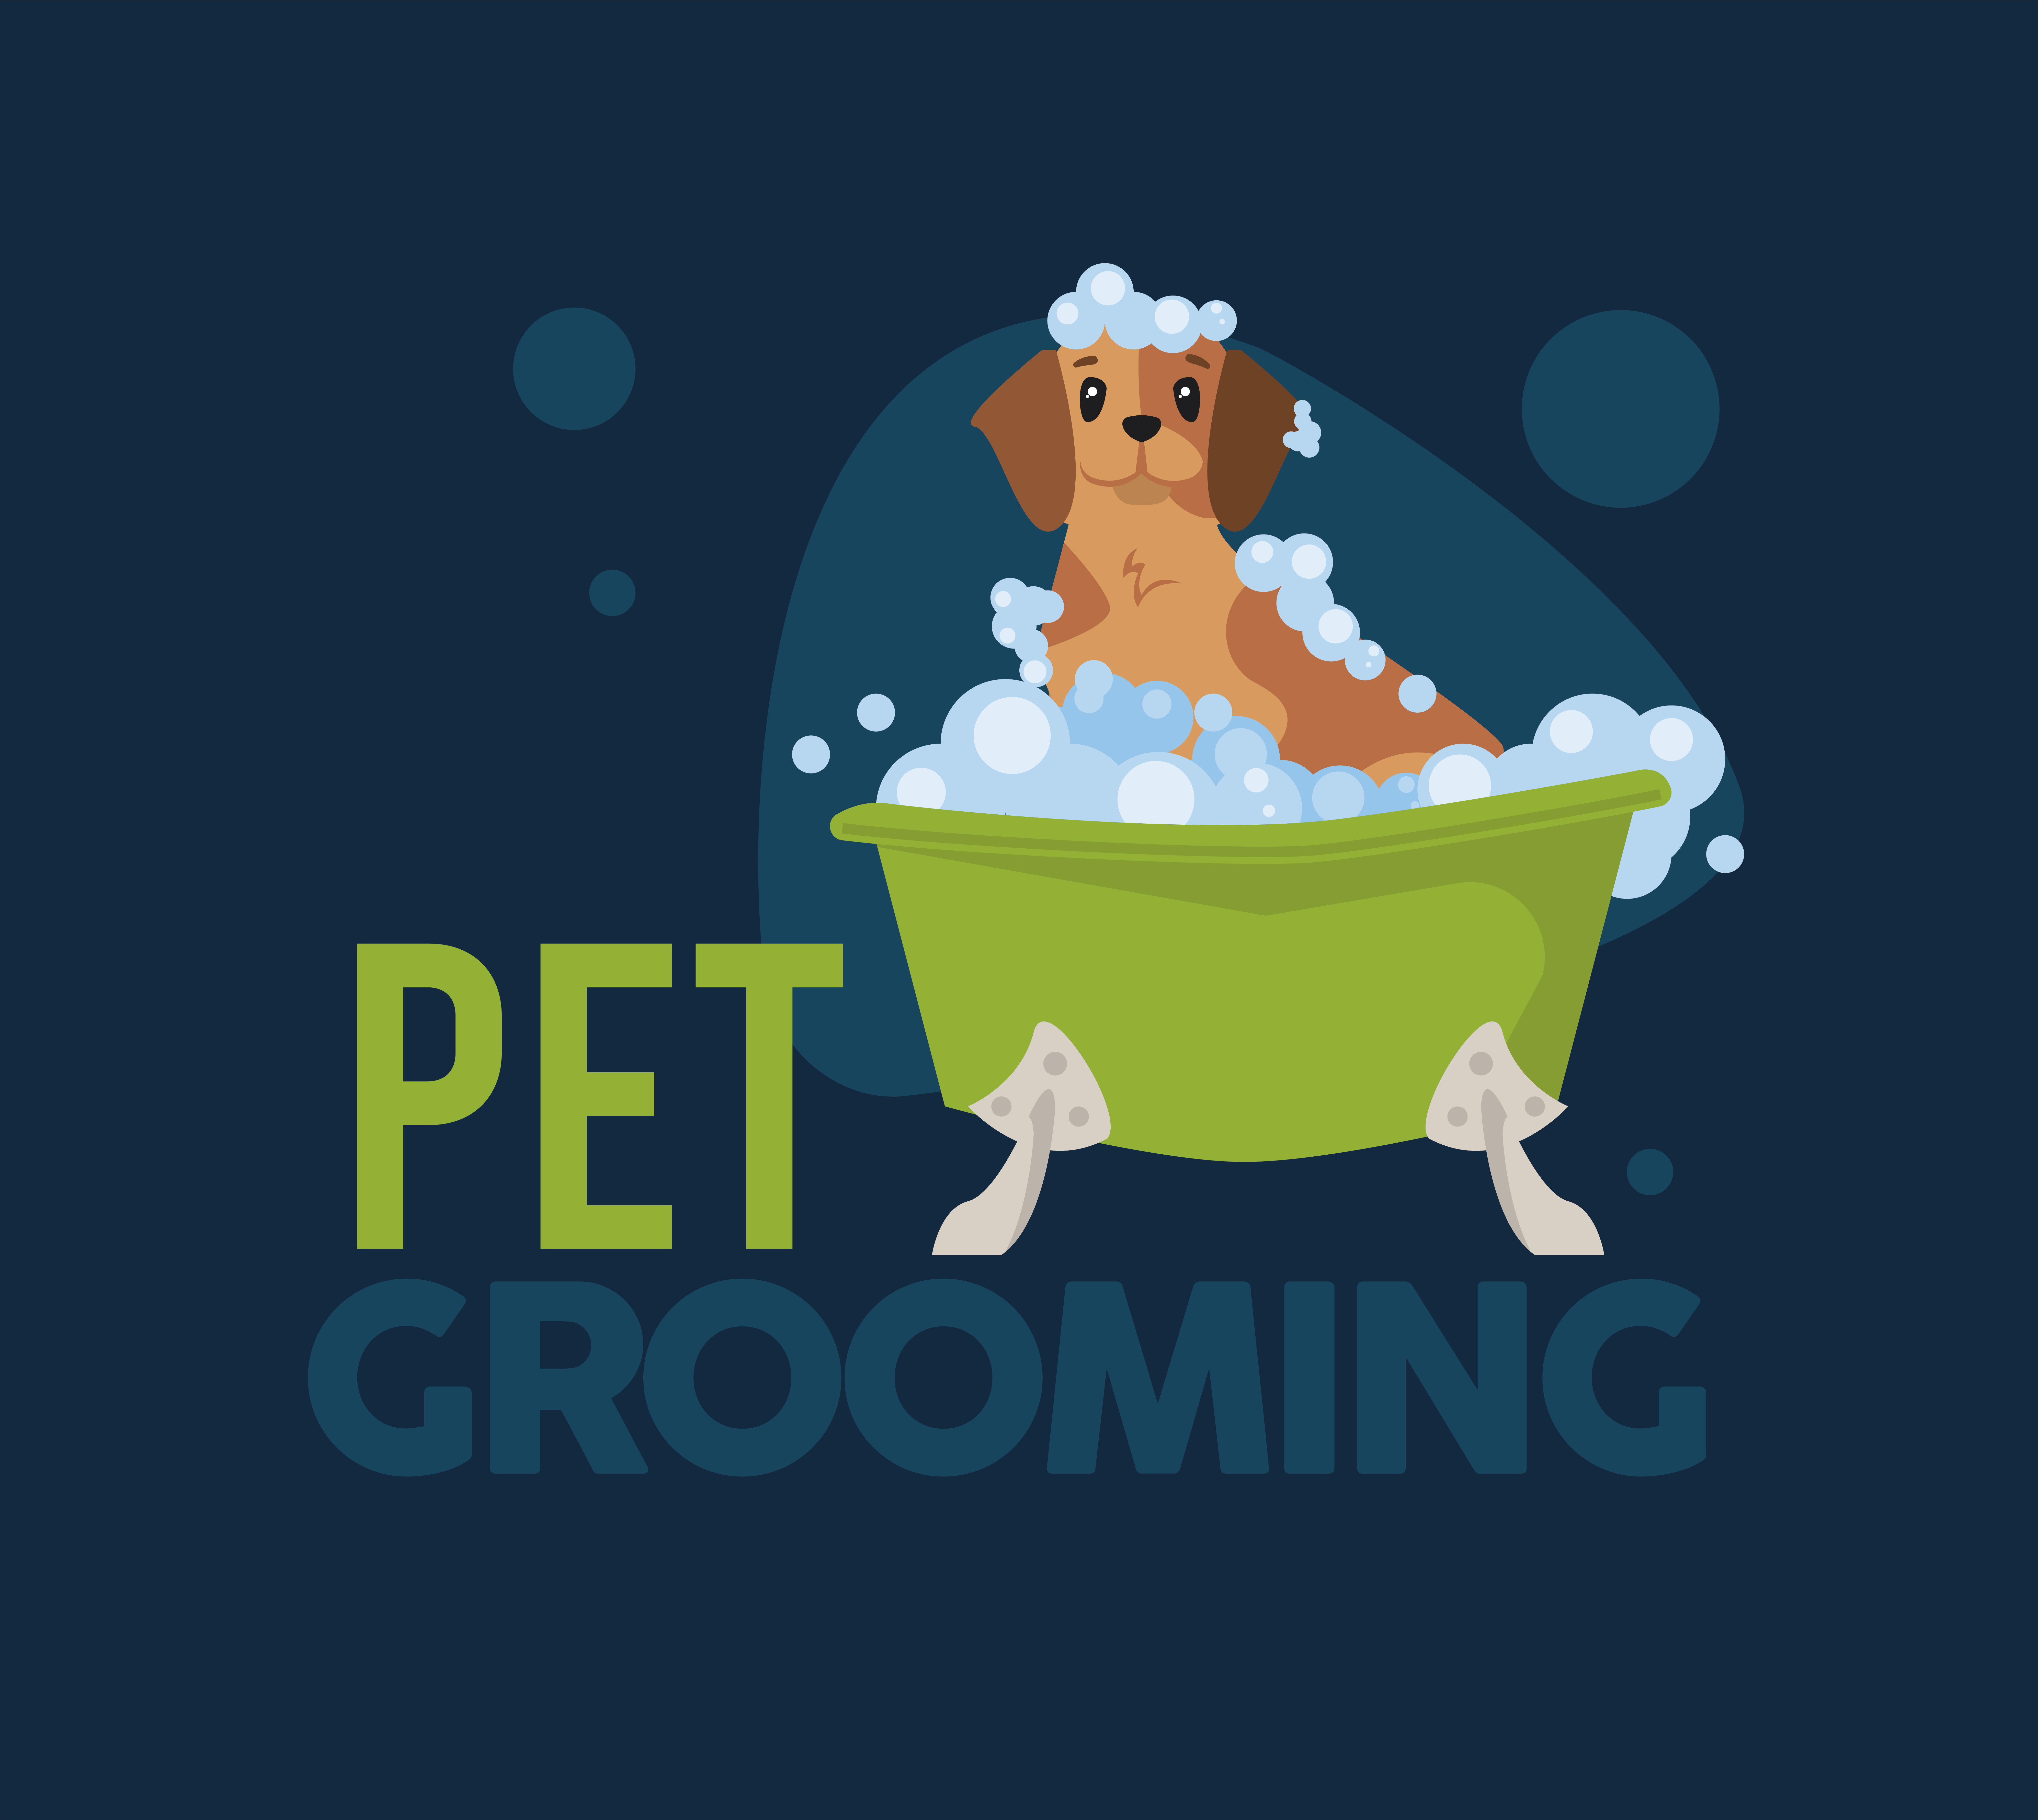 Pet grooming of dog cartoon 3760294 Vector Art at Vecteezy